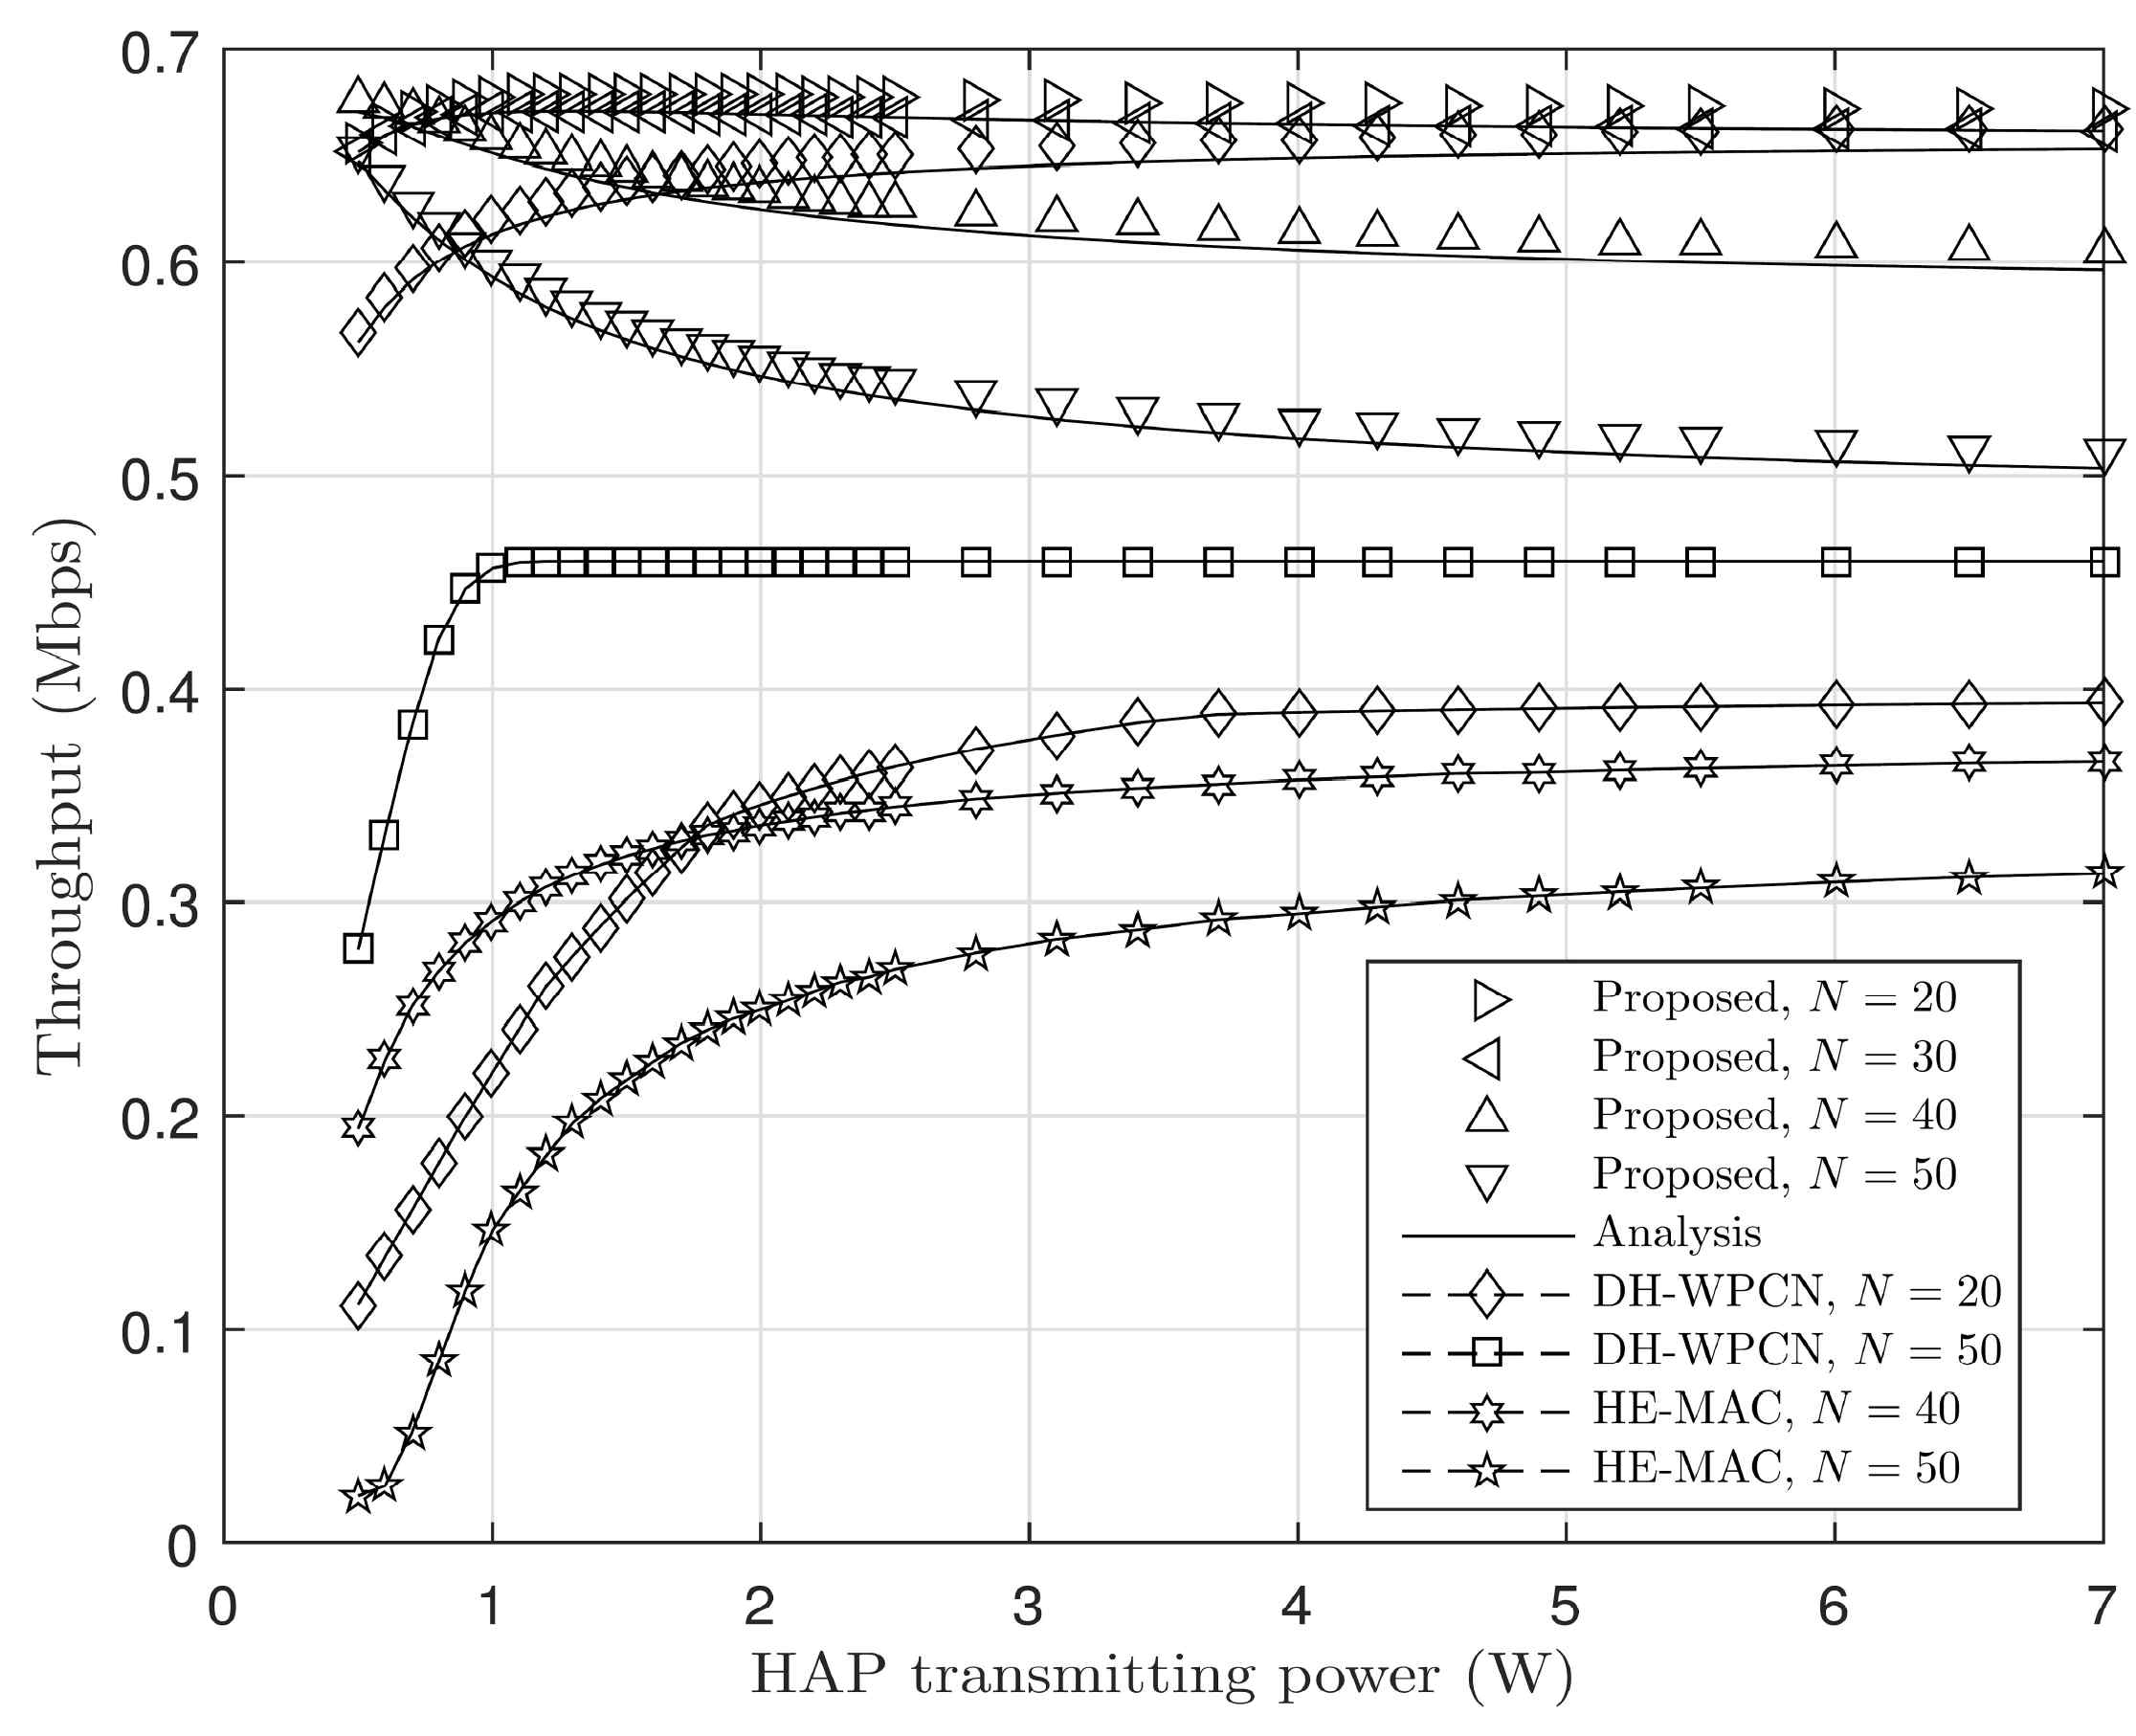 HAP 전송 전력 및 그룹 내 단말 수에 따른 네트워크 처리율 성능 비교